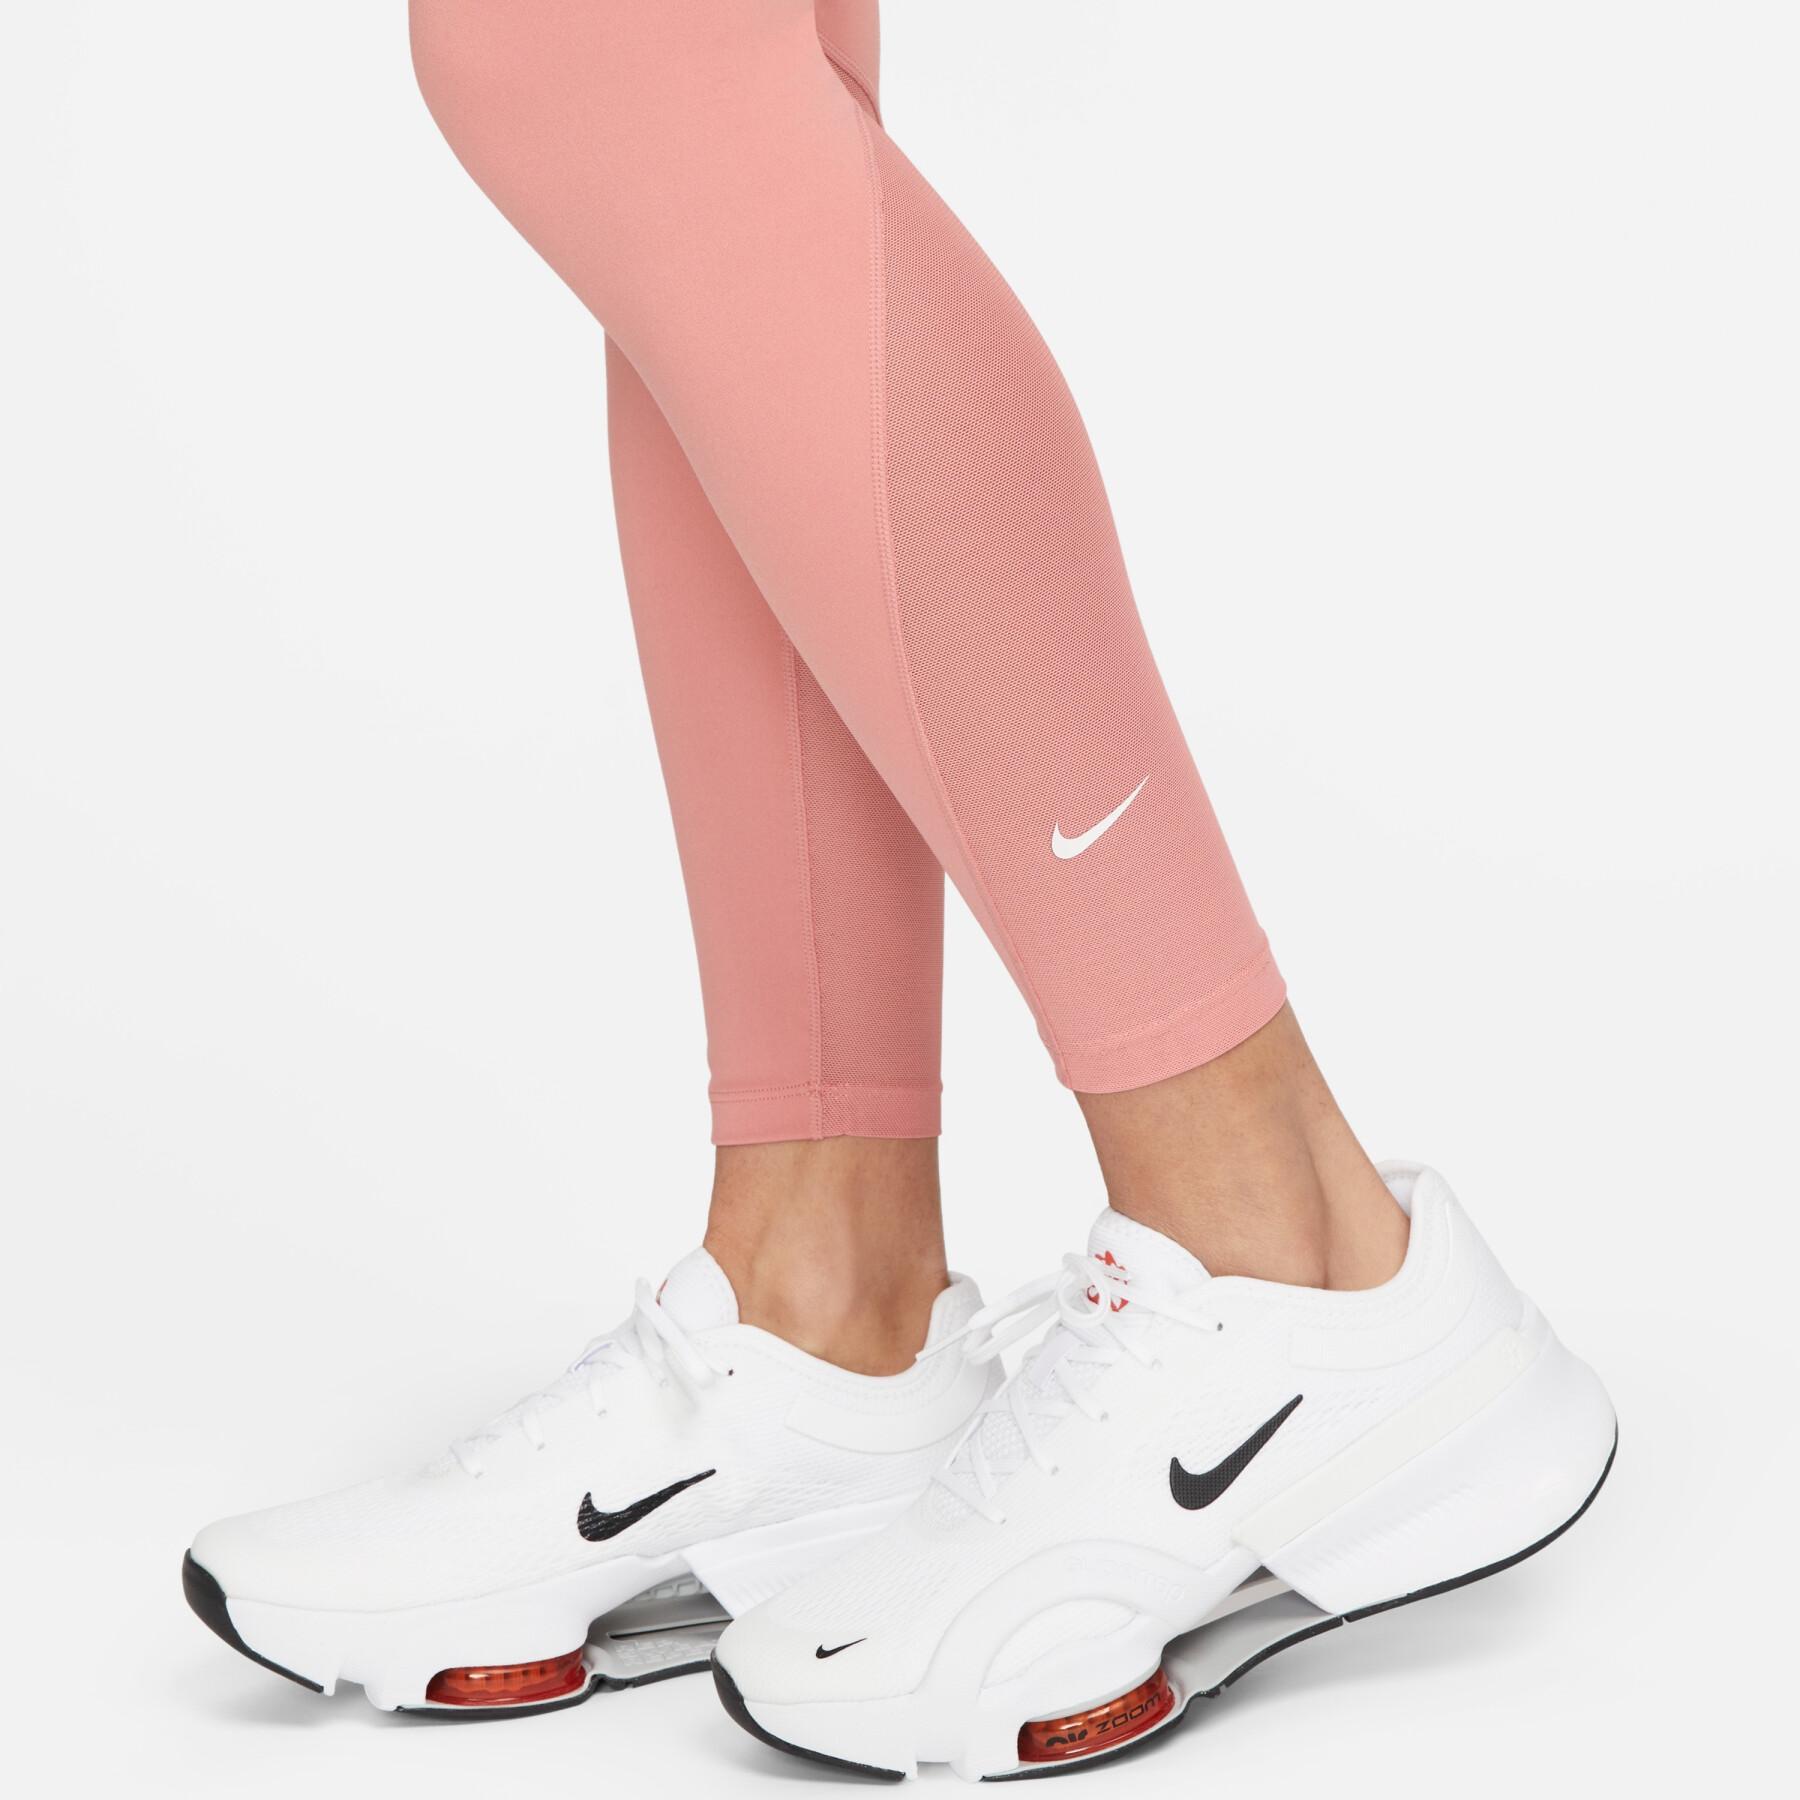 Women's 7/8 mid-rise leggings Nike One